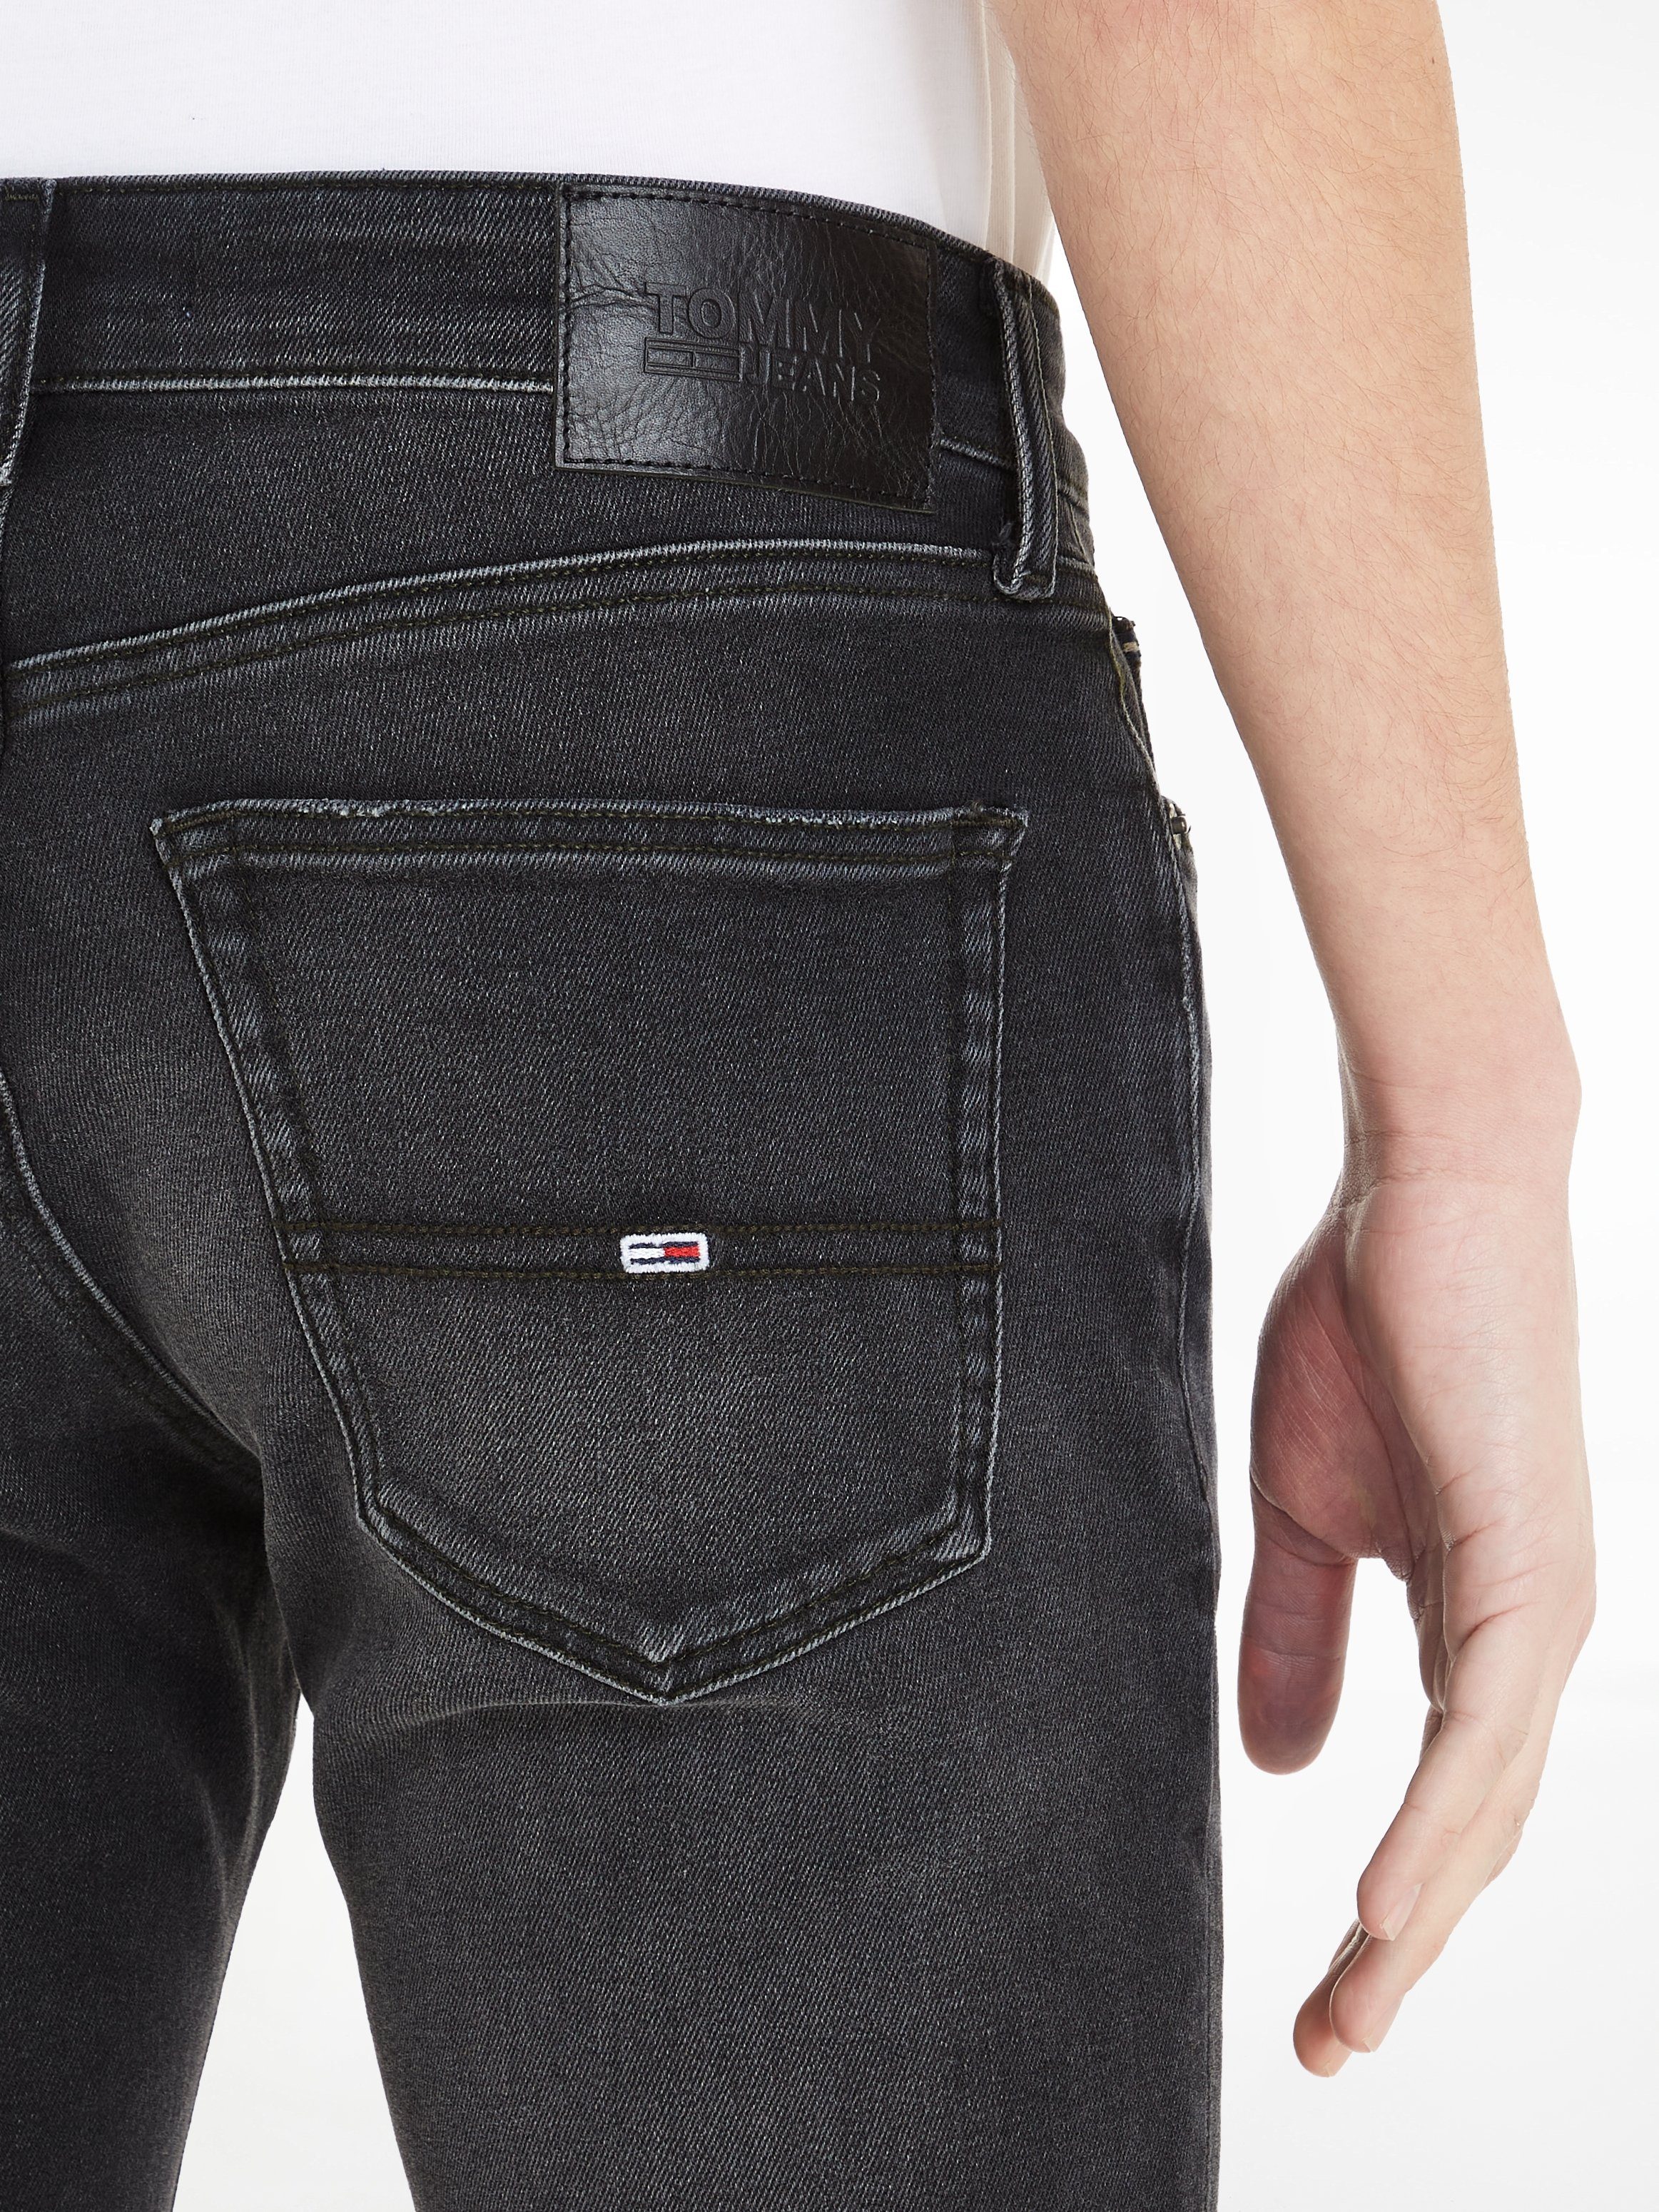 Jeans Black Denim SLIM SCANTON 5-Pocket-Jeans Tommy